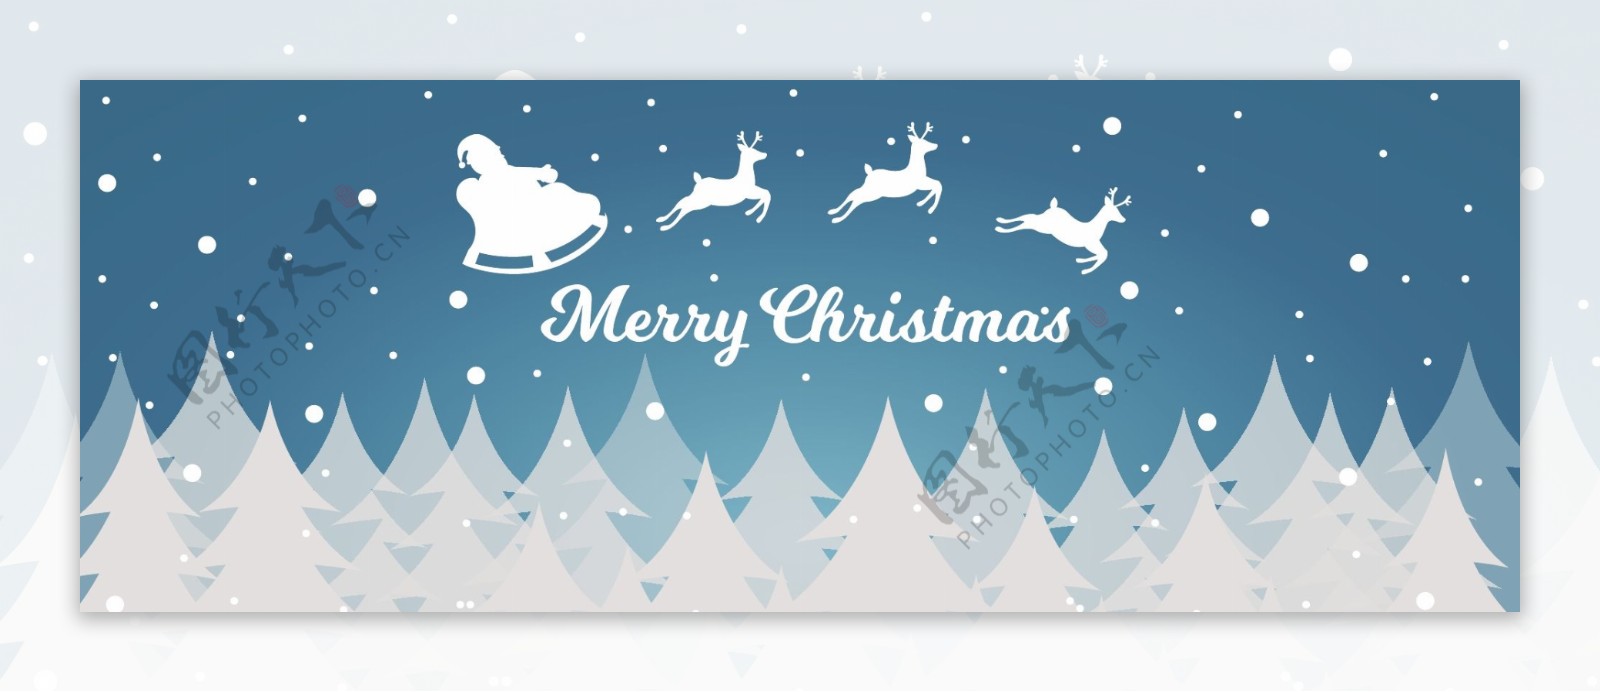 抽象白色圣诞树banner背景图